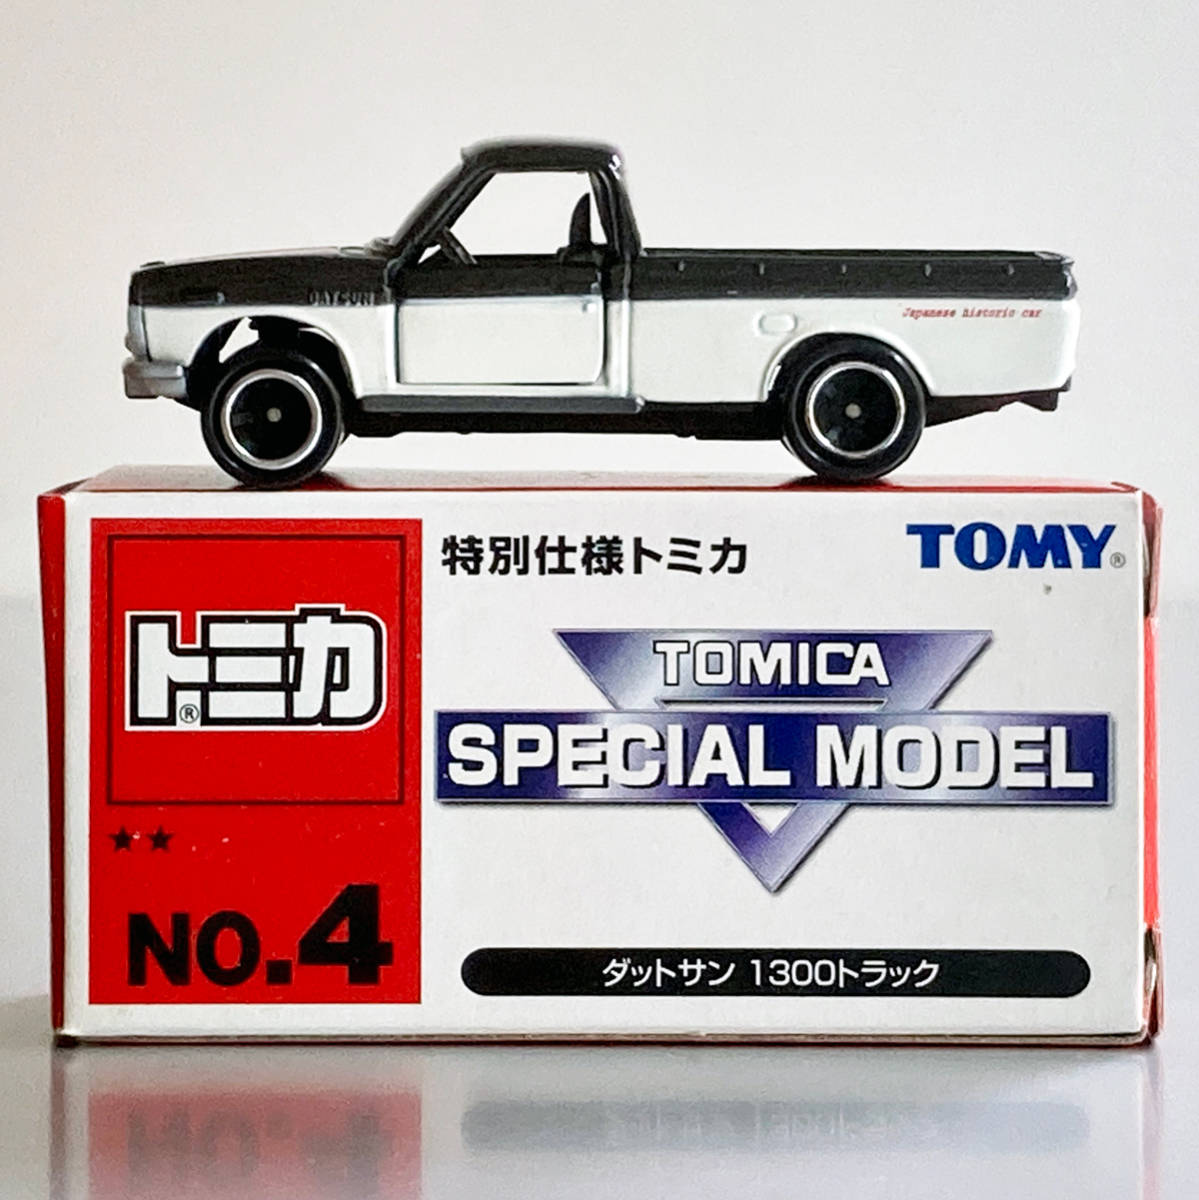 特別仕様トミカ ダットサン 1300 トラック Tomy Tomica Special Model